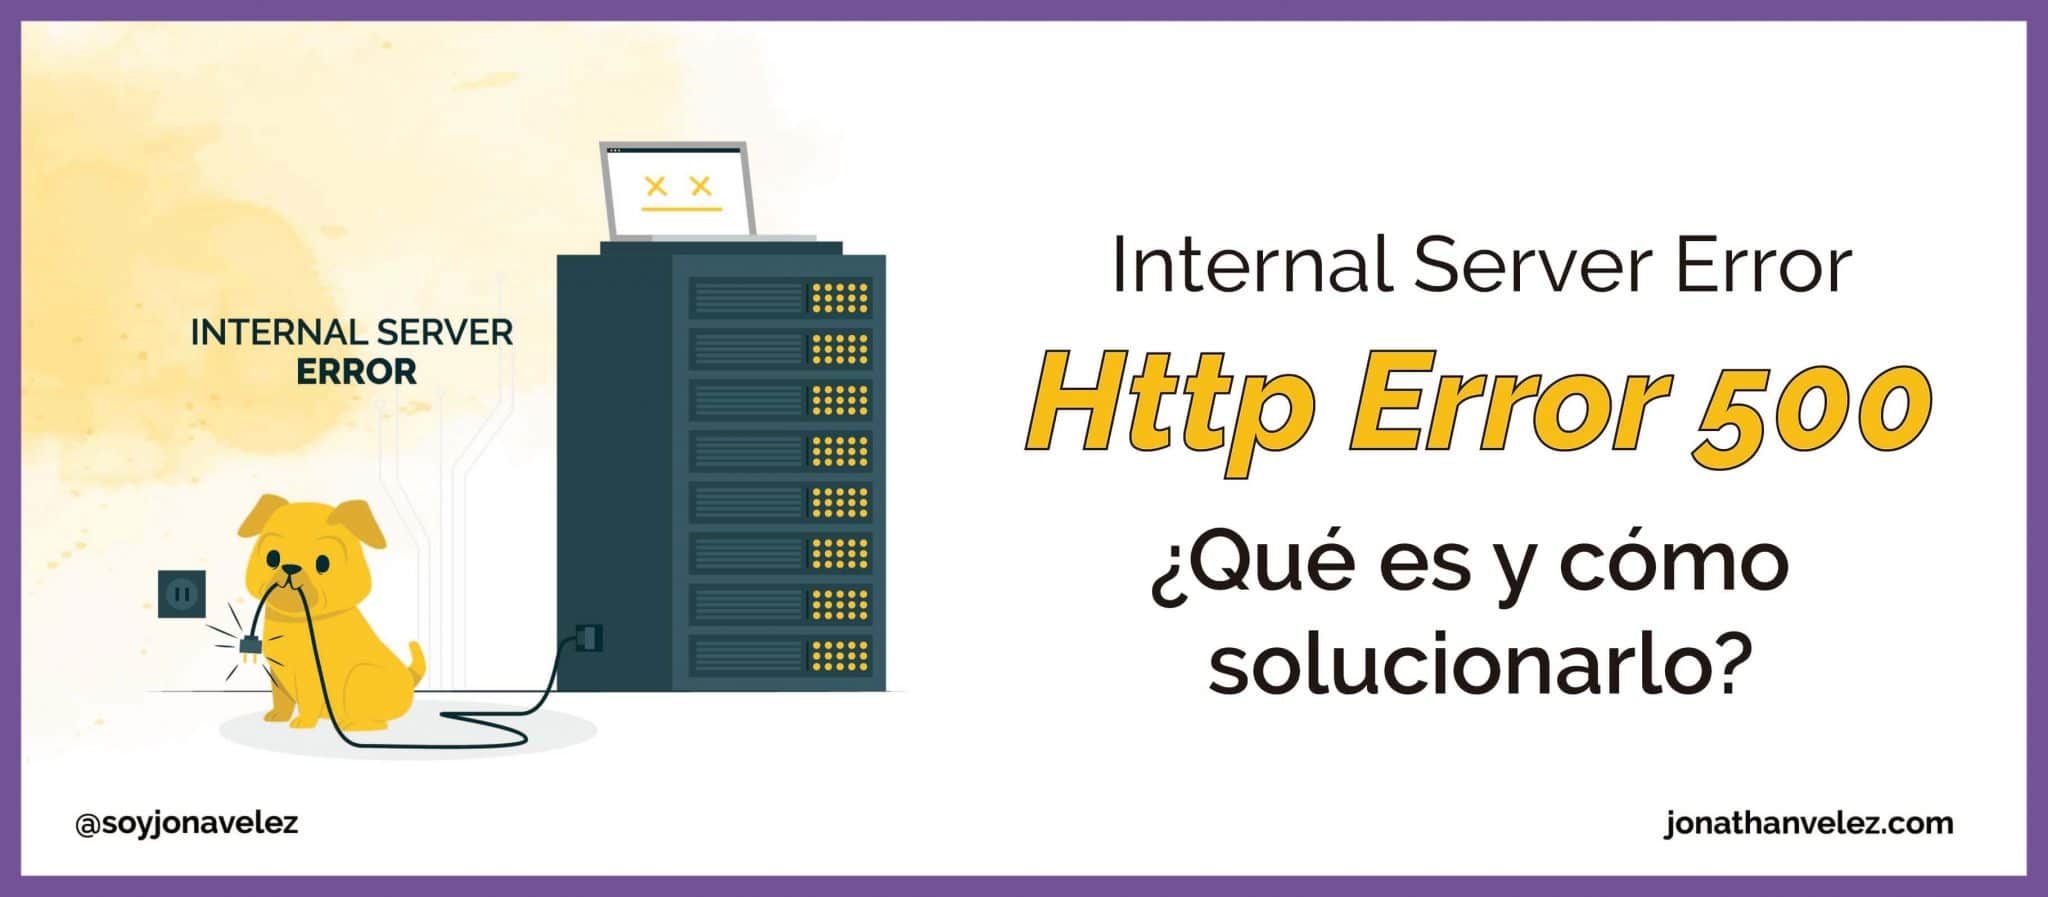 HTTP Error 500 – Internal Server Error ¿Qué es y cómo Solucionar?